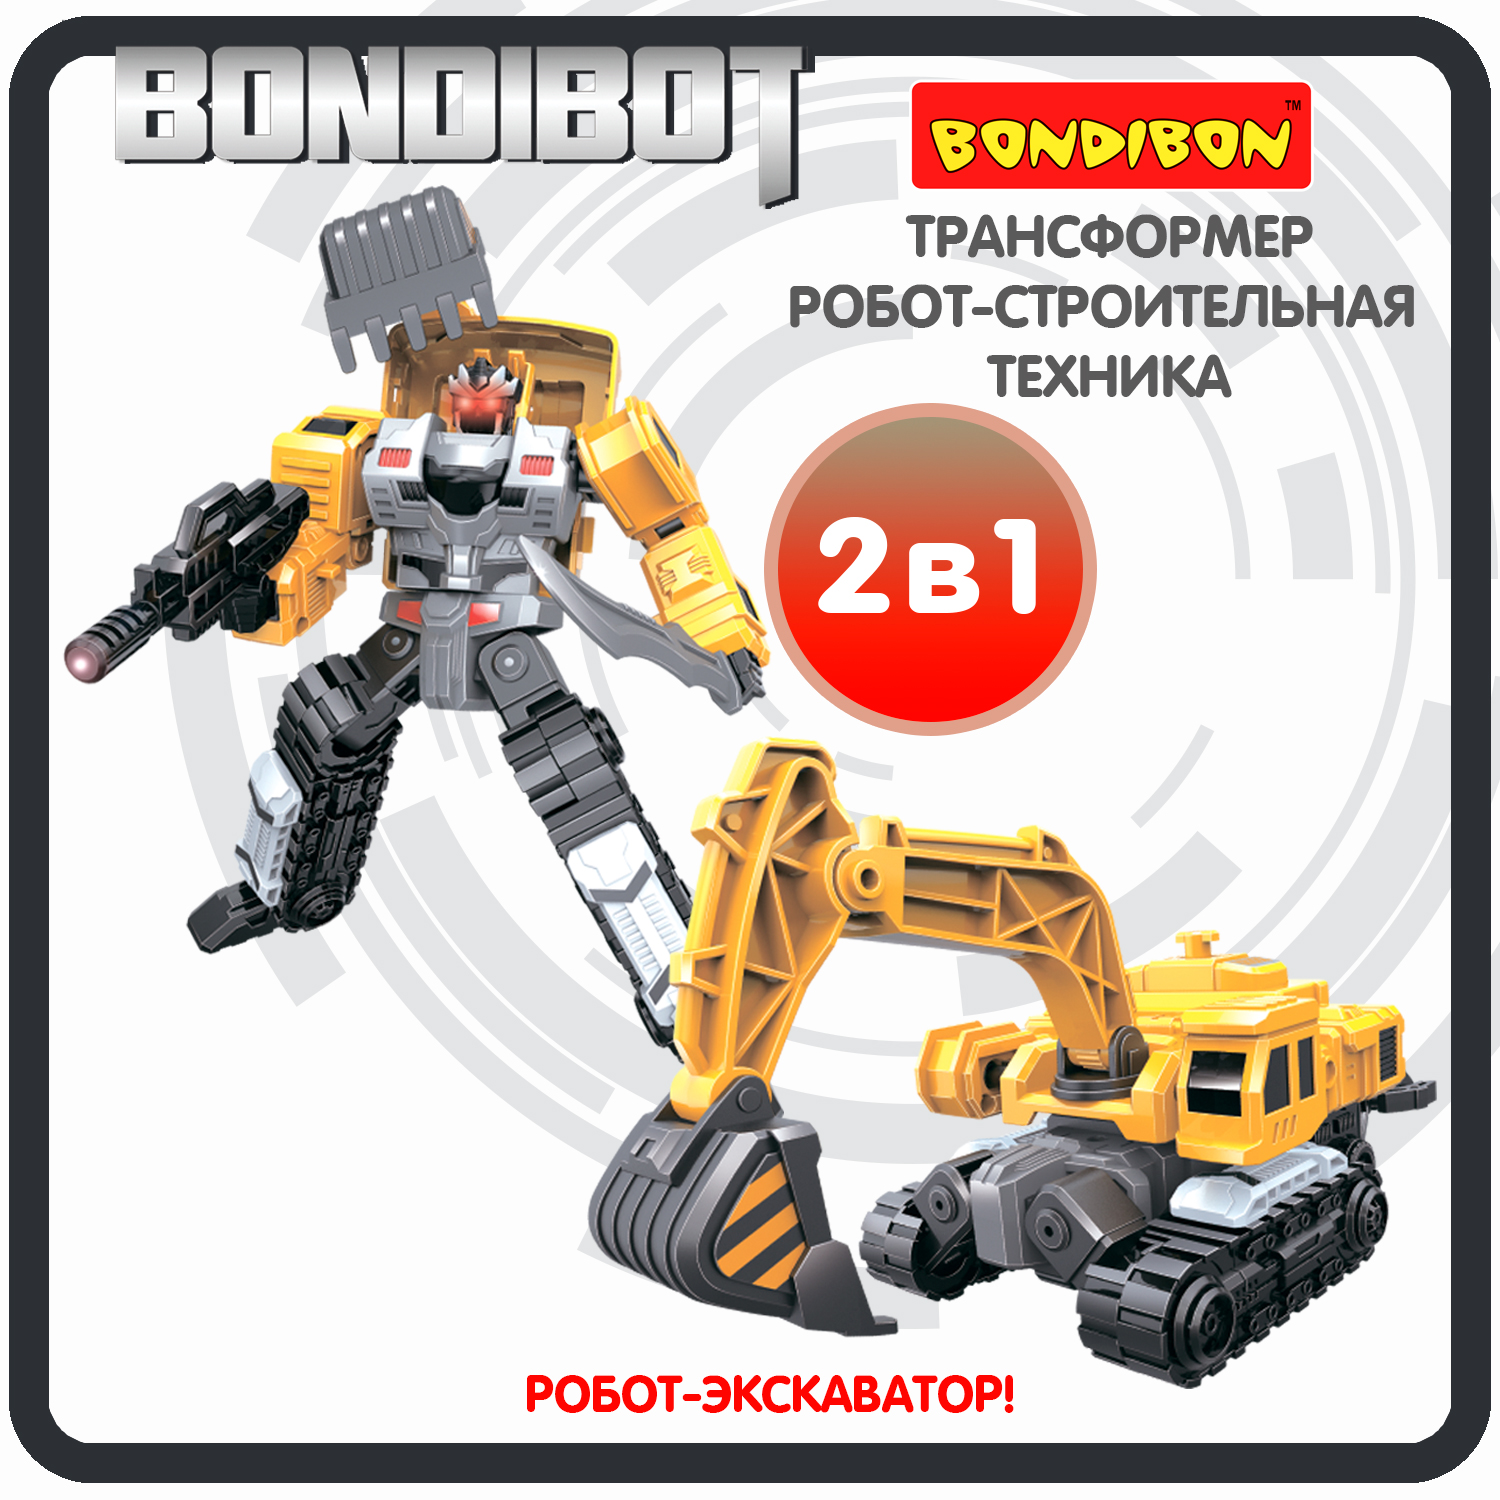 Трансформер робот-строительная техника, 2в1 BONDIBOT Bondibon, экскаватор / ВВ6048